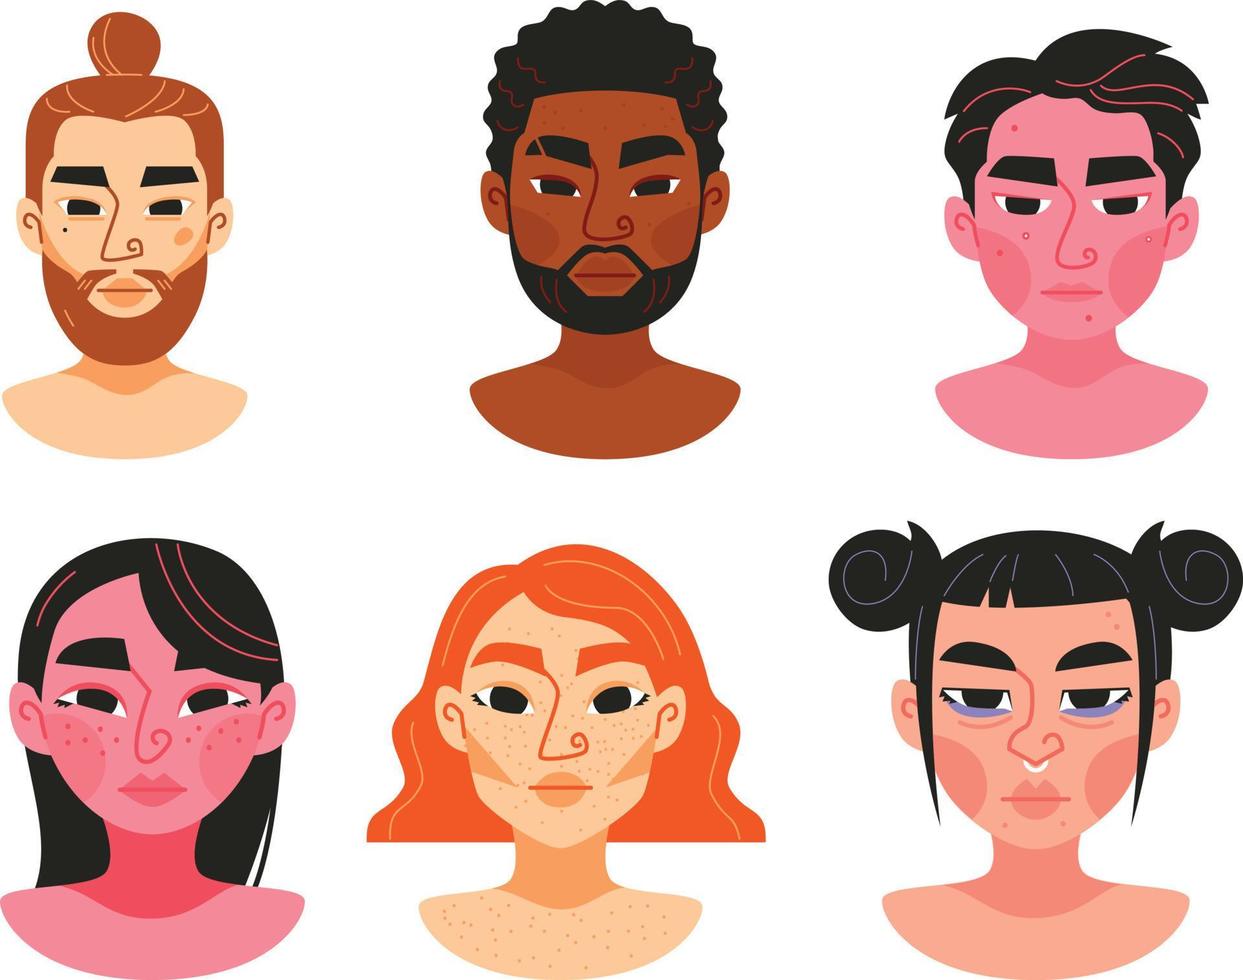 reeks van mensen avatars met verschillend huid kleuren. vector illustratie in vlak stijl